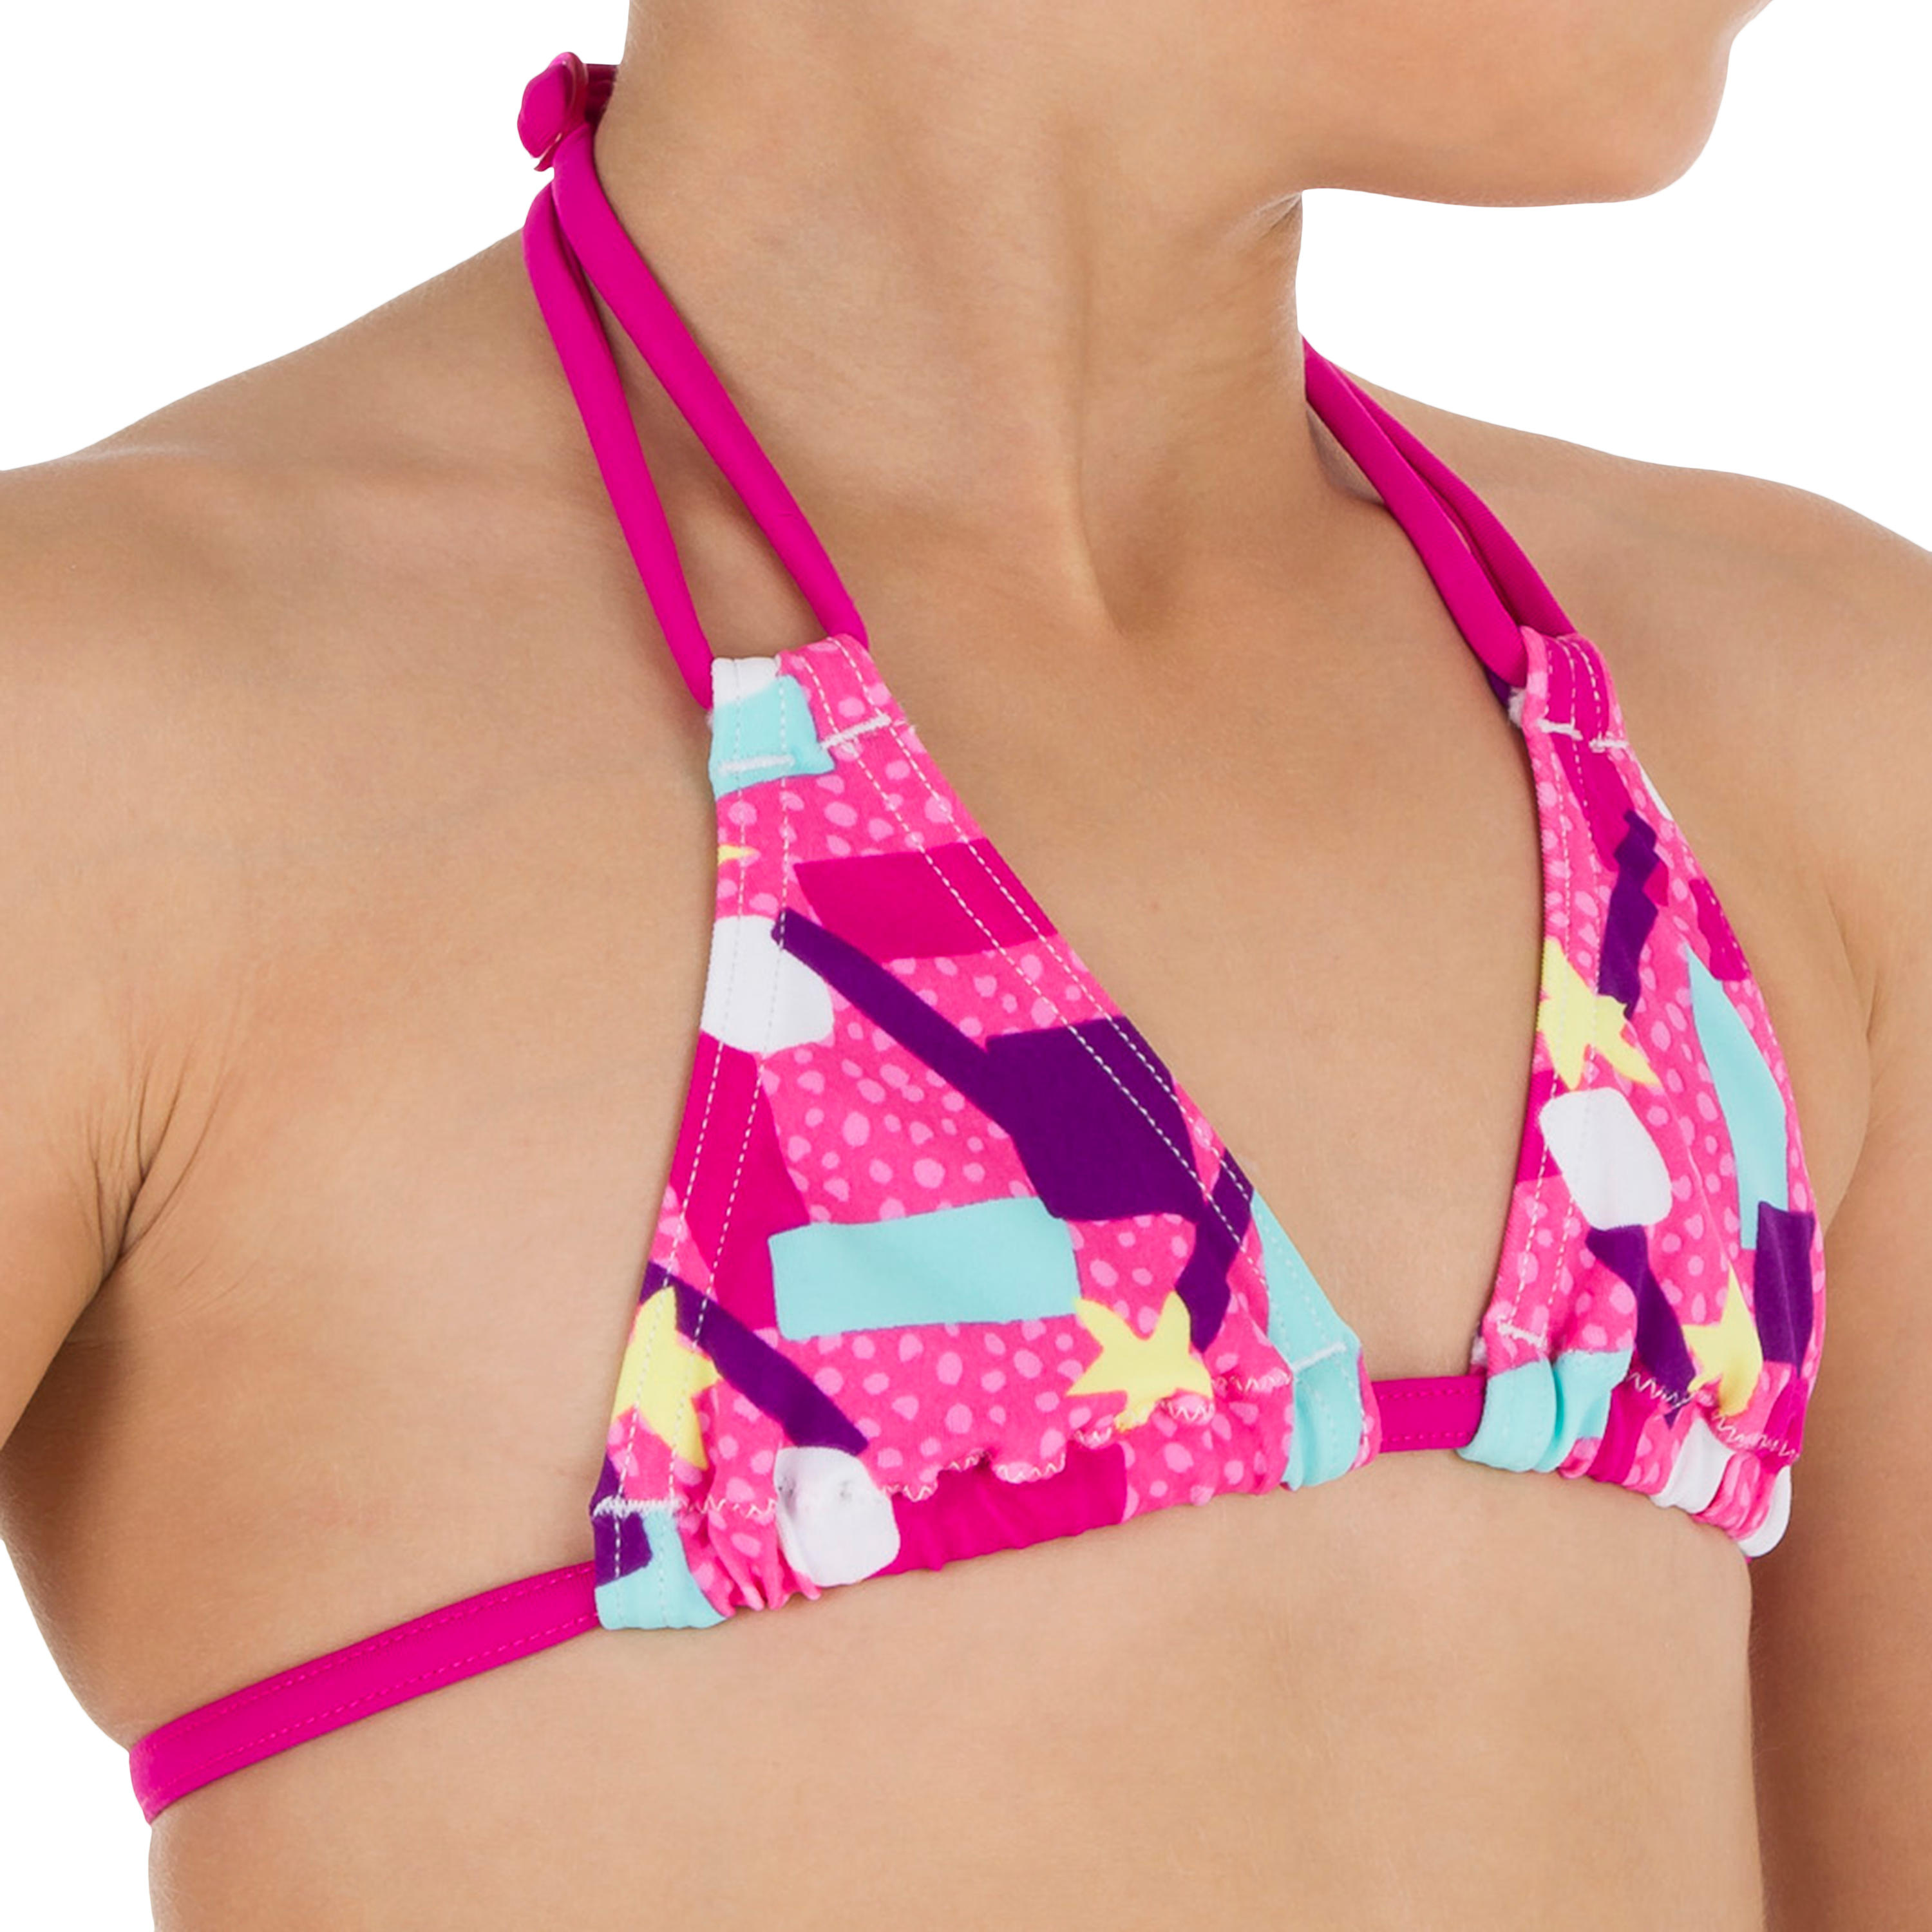 Taloo Girls' Two-Piece Triangle Bikini Swimsuit - Lagoon Pink 5/8